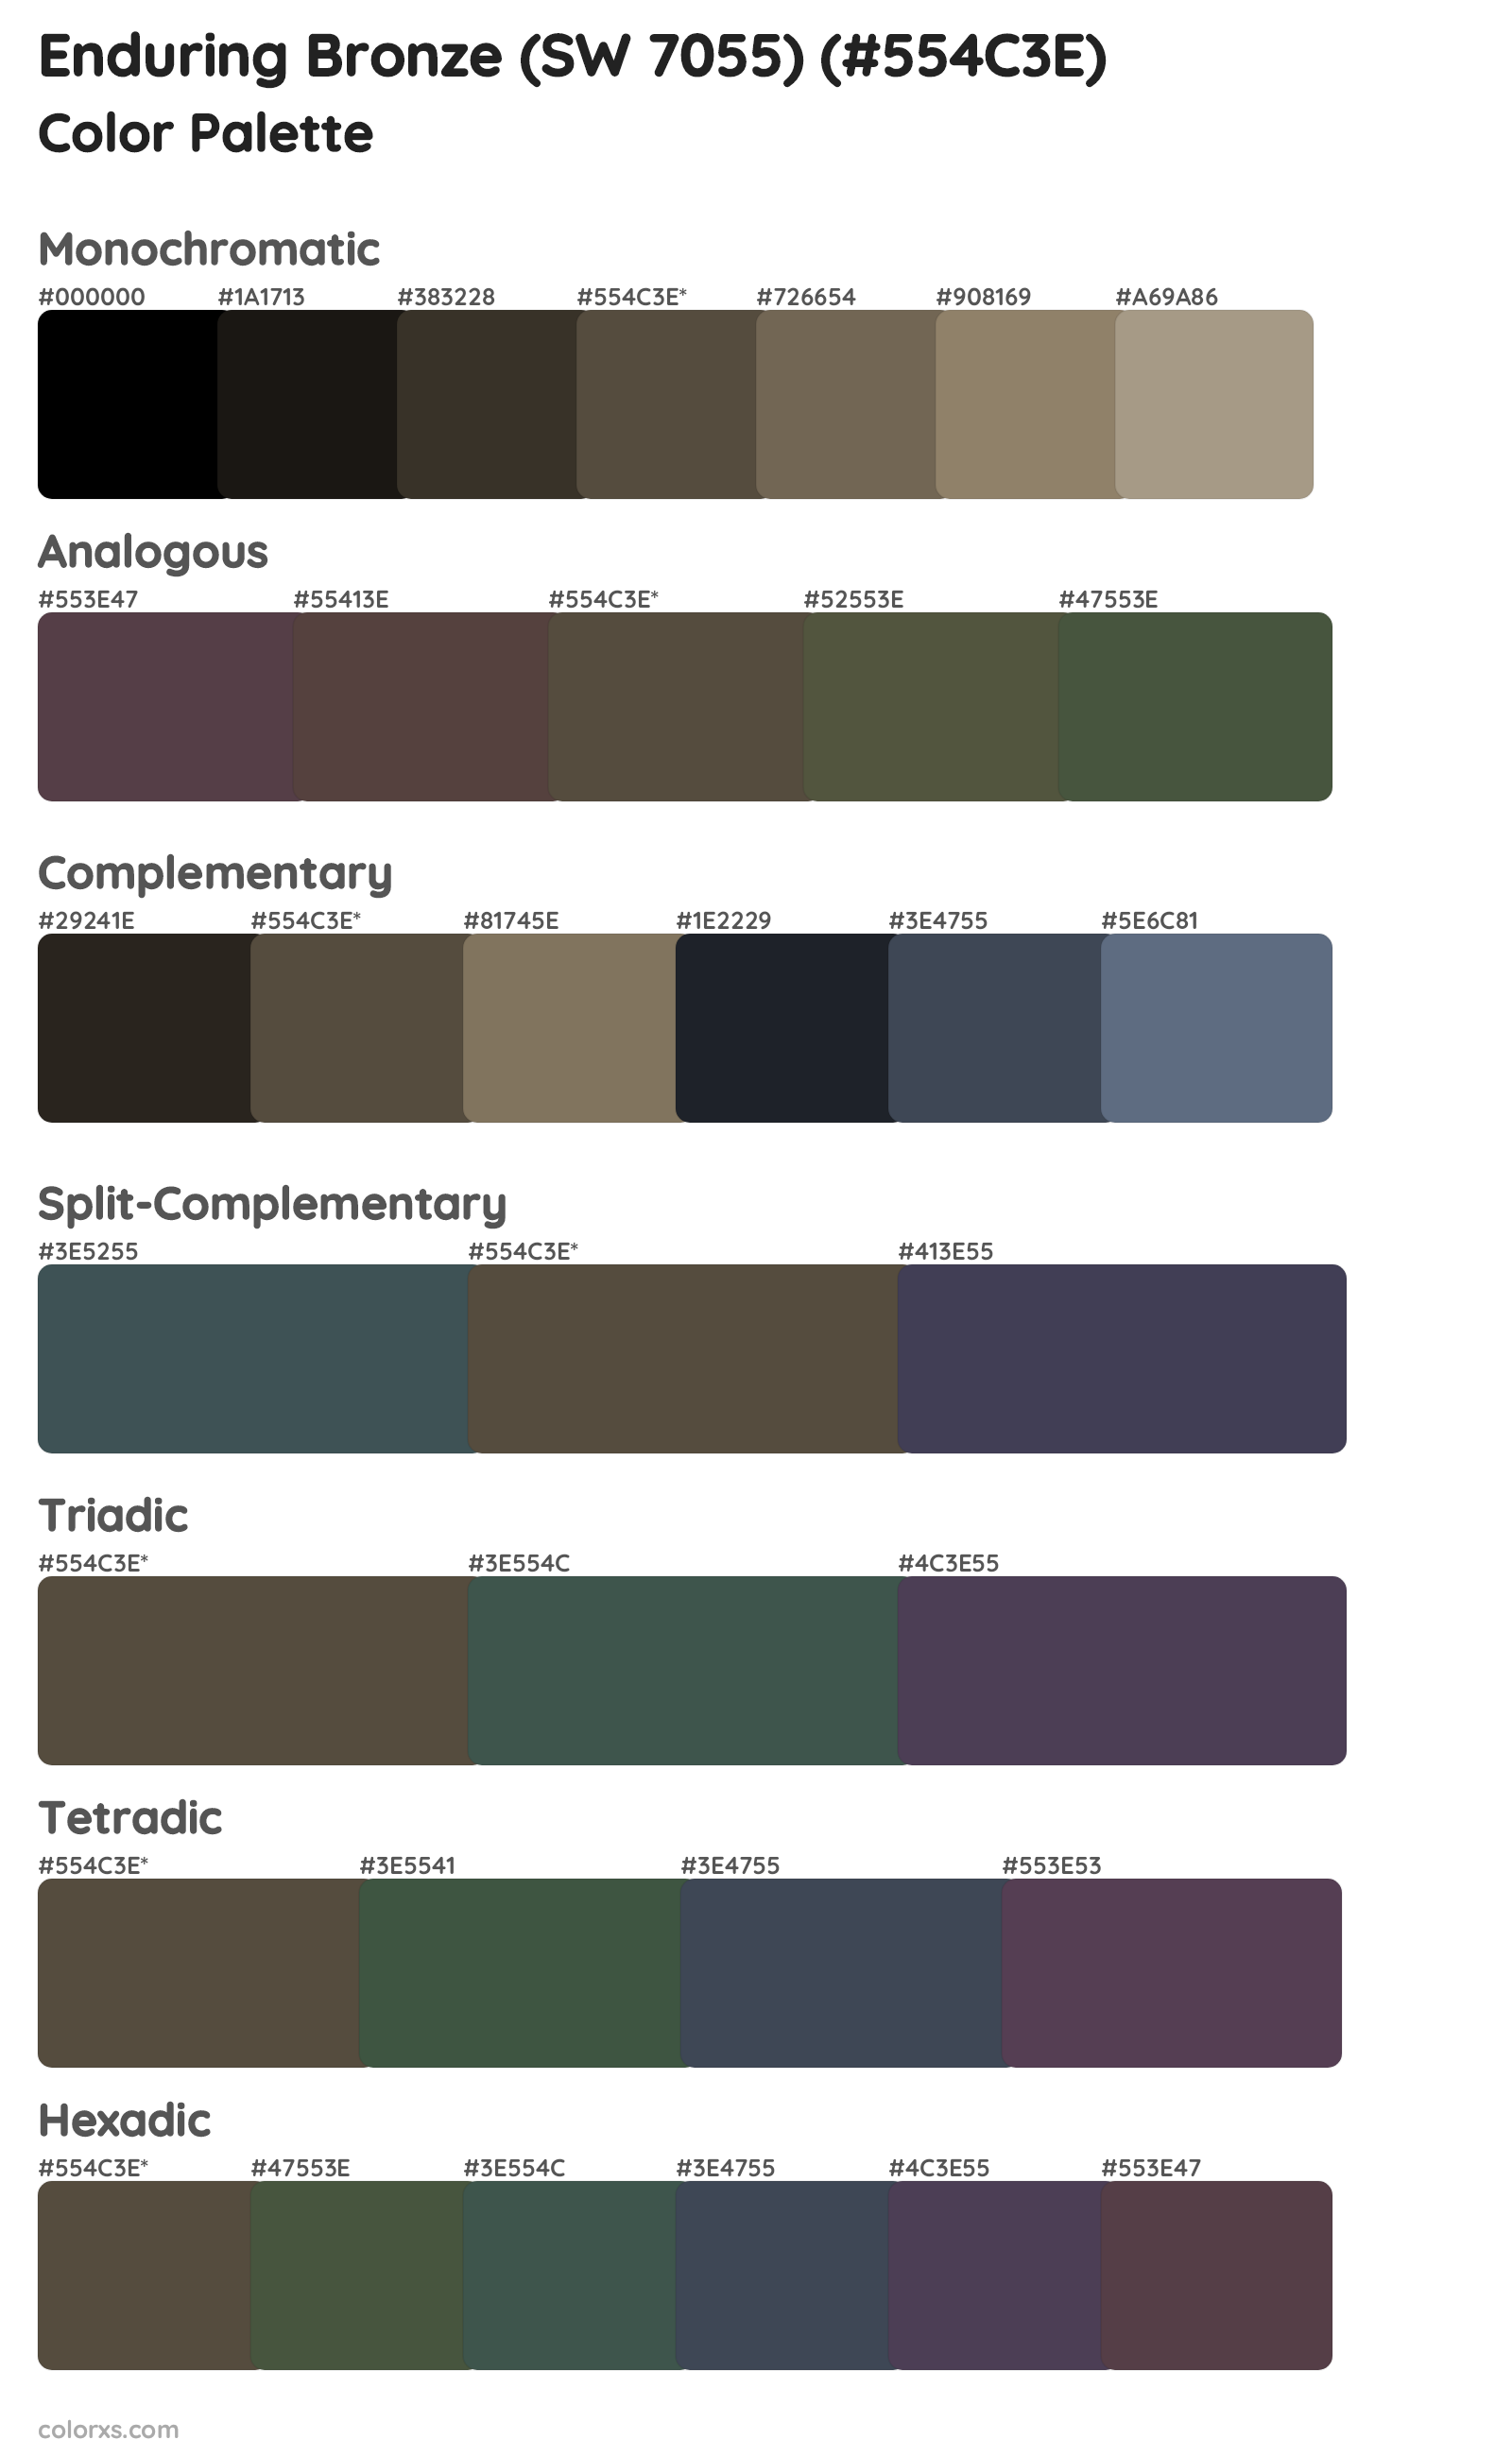 Enduring Bronze (SW 7055) Color Scheme Palettes